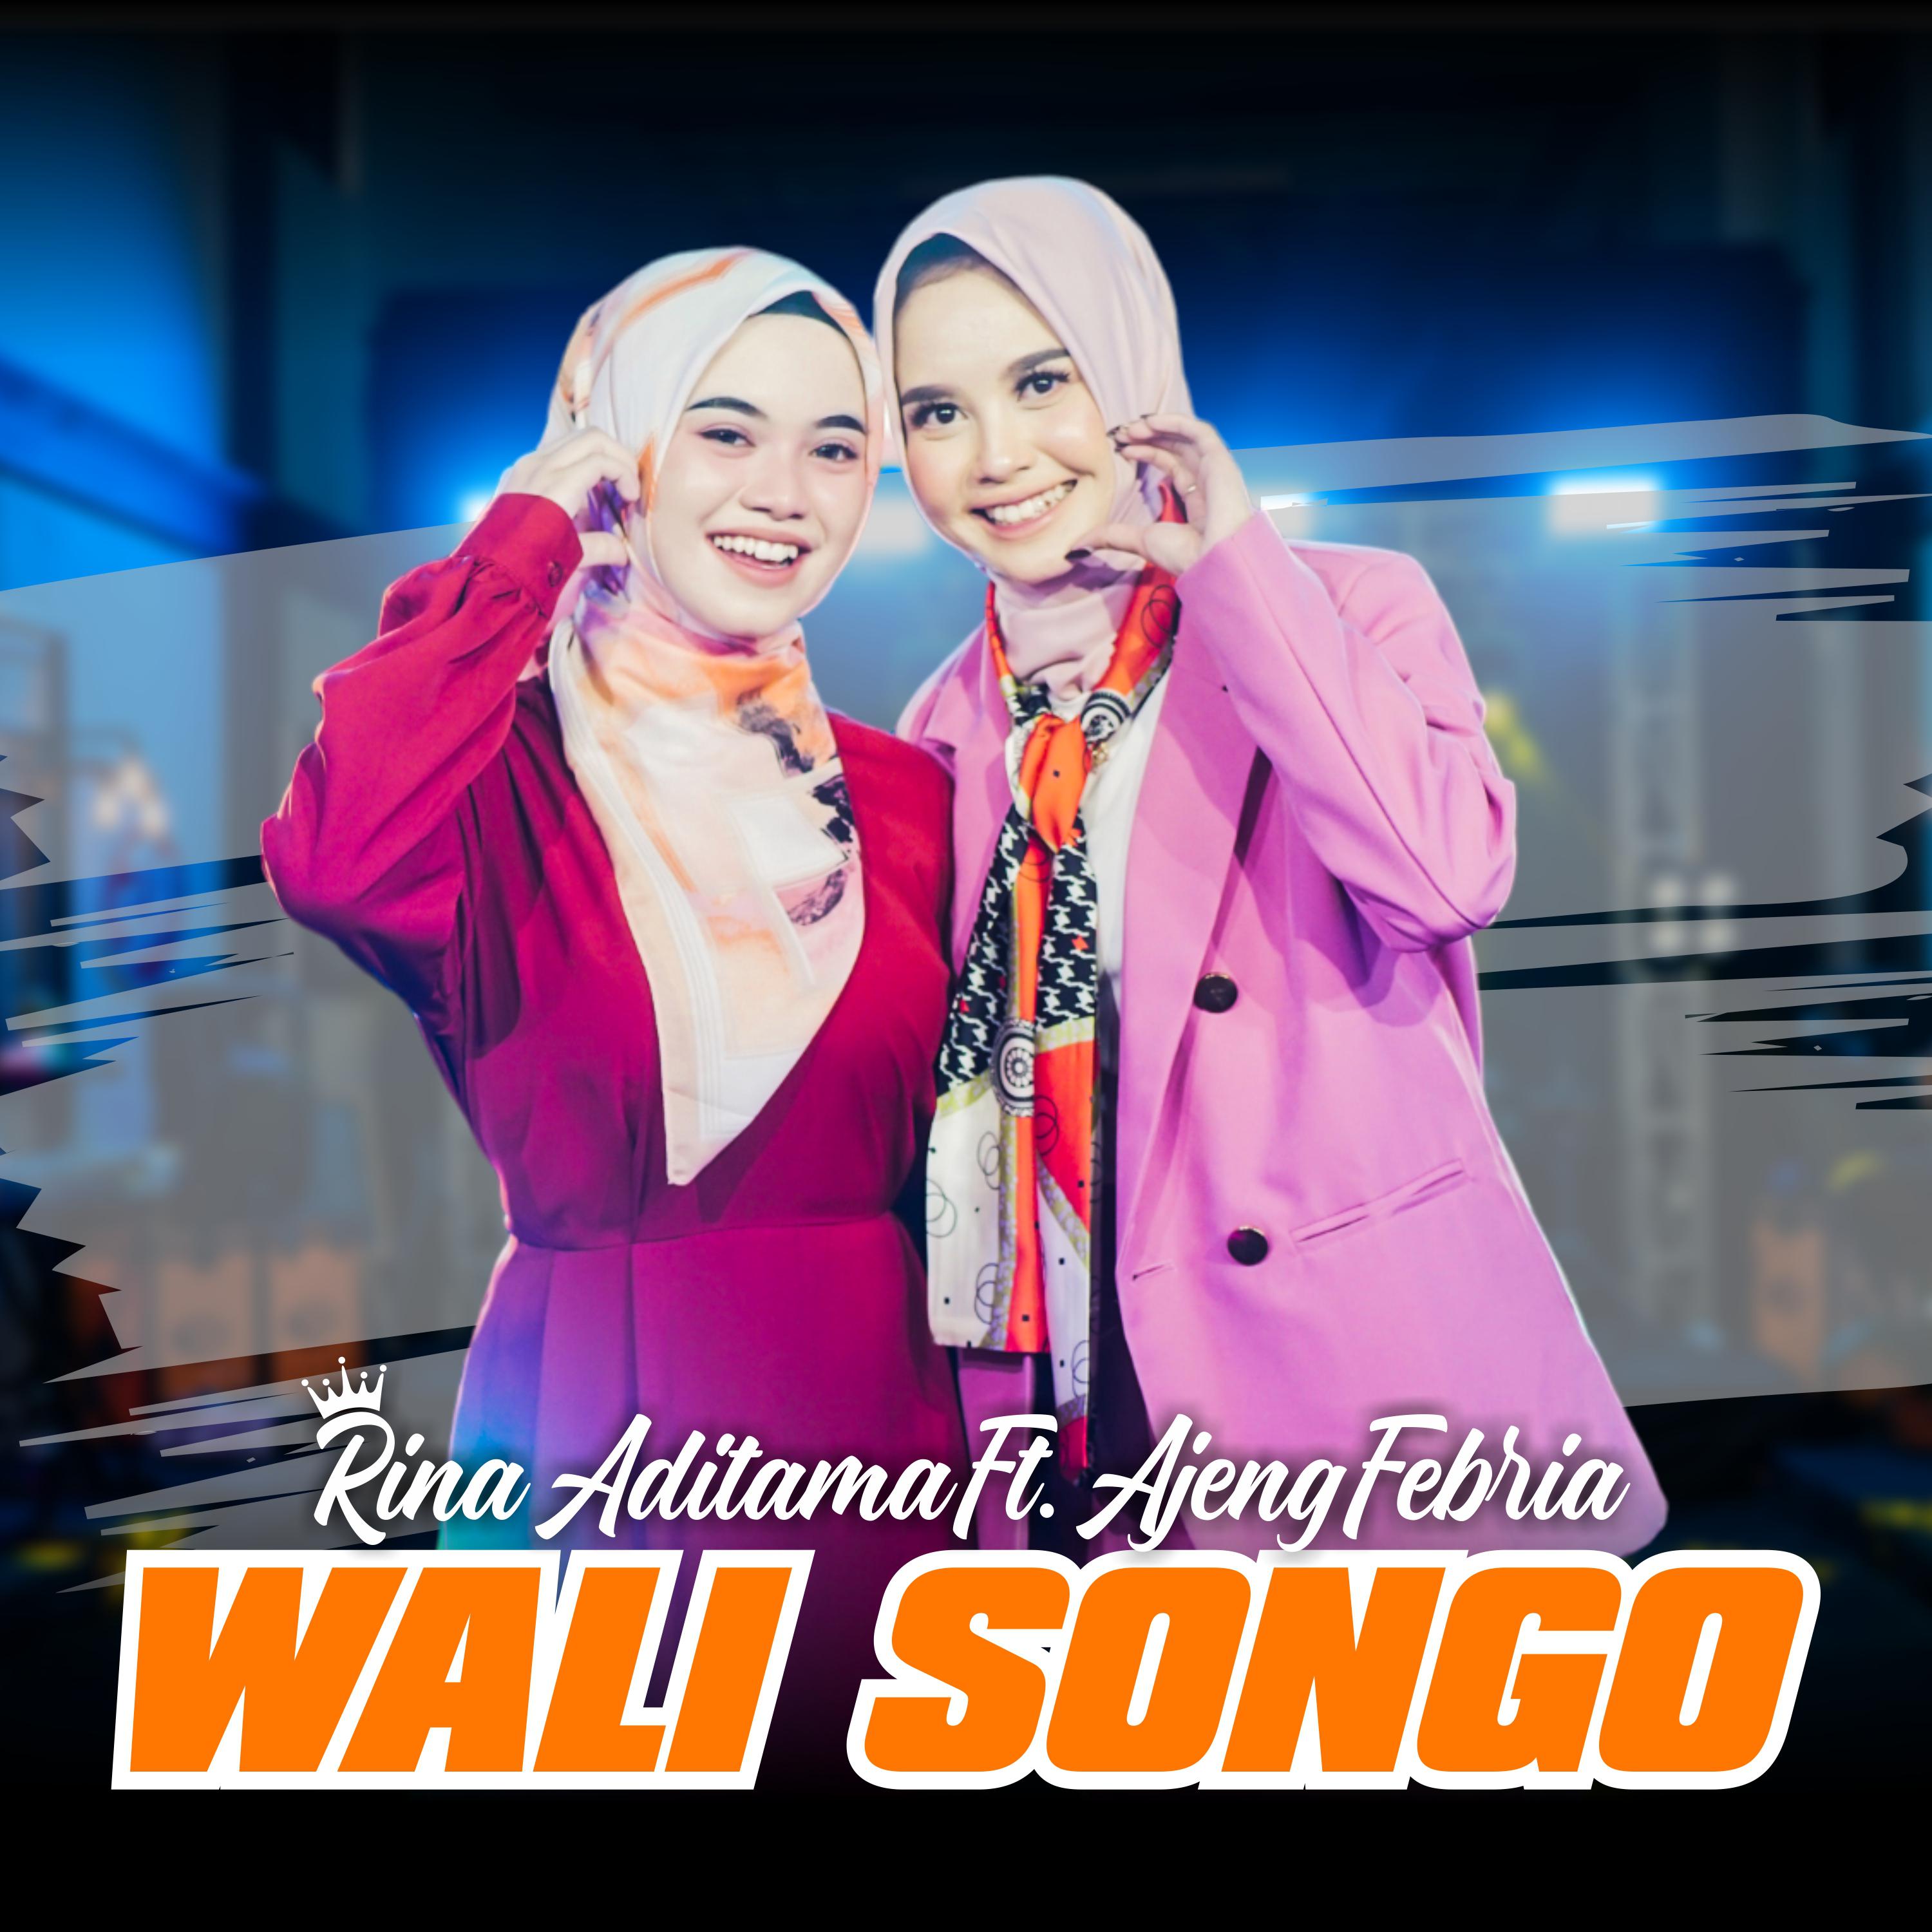 Постер альбома Walisongo